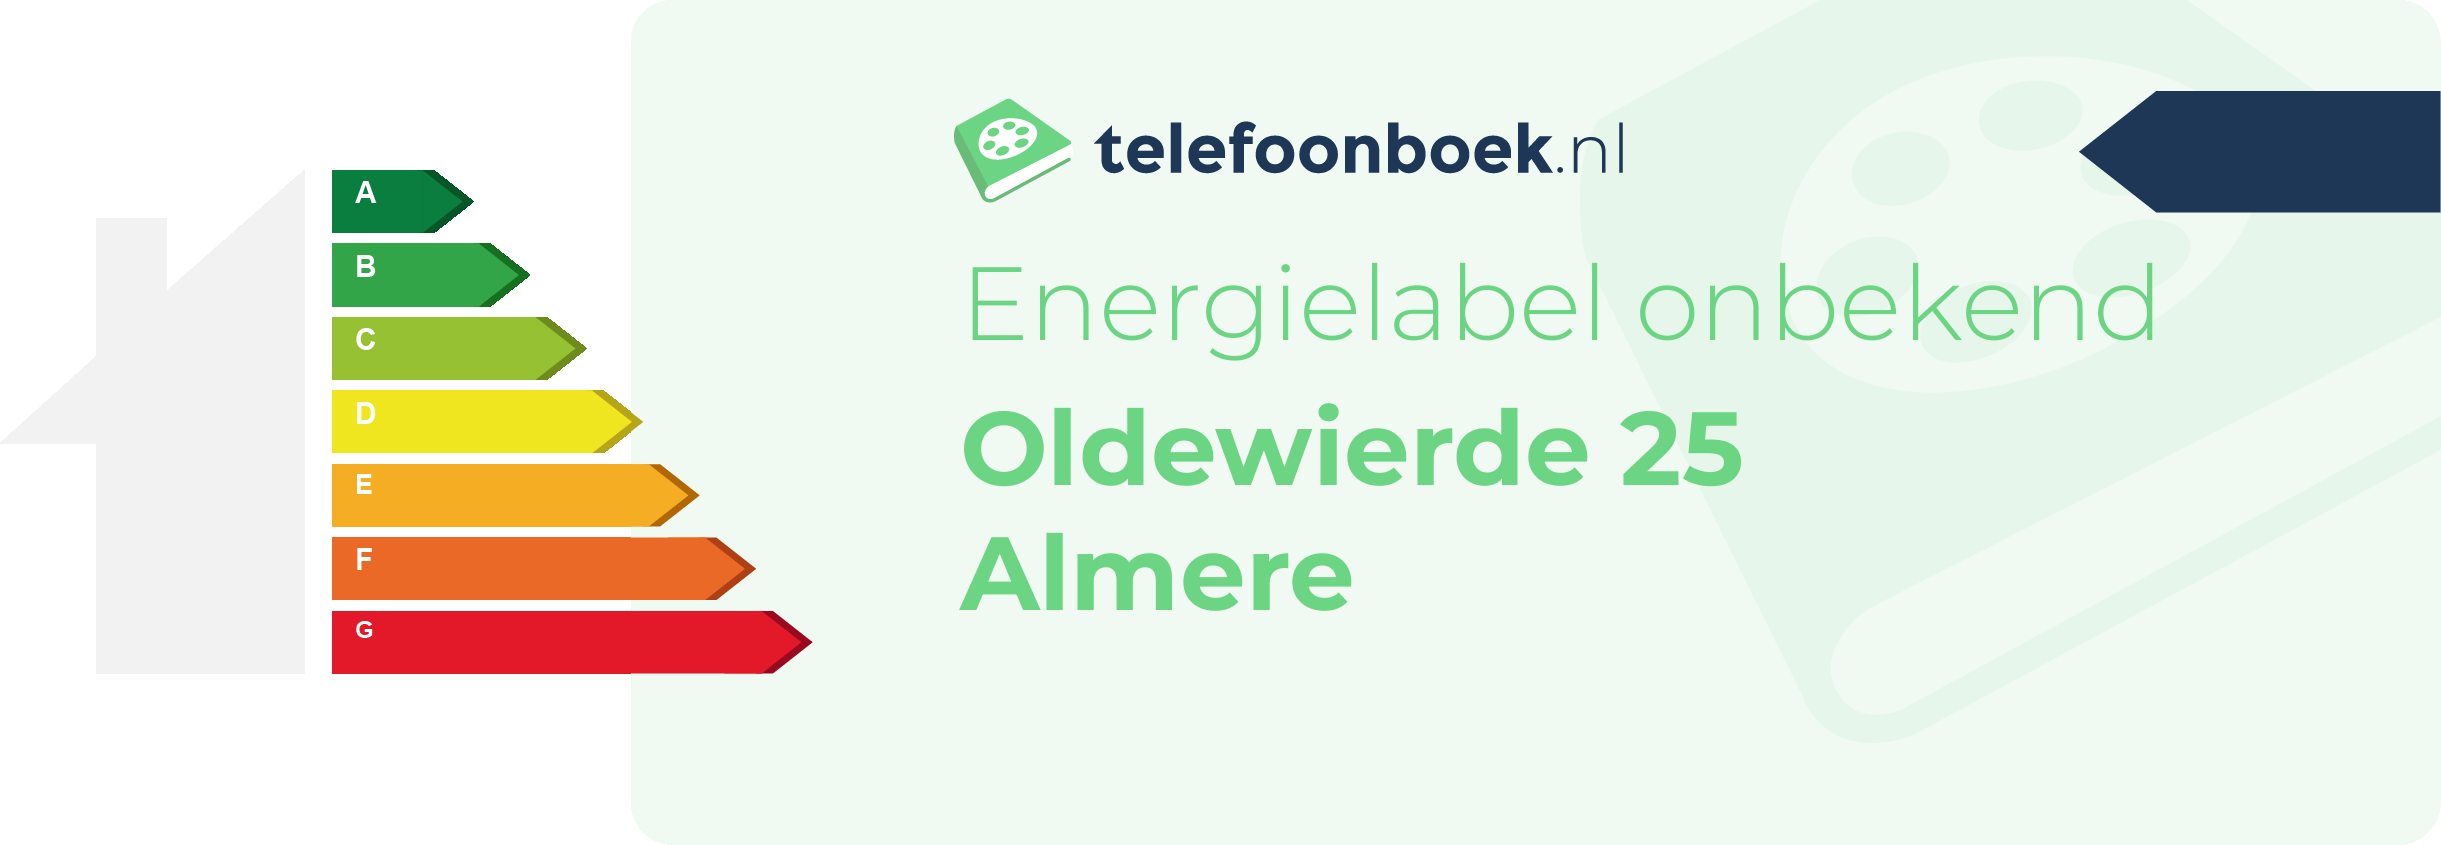 Energielabel Oldewierde 25 Almere